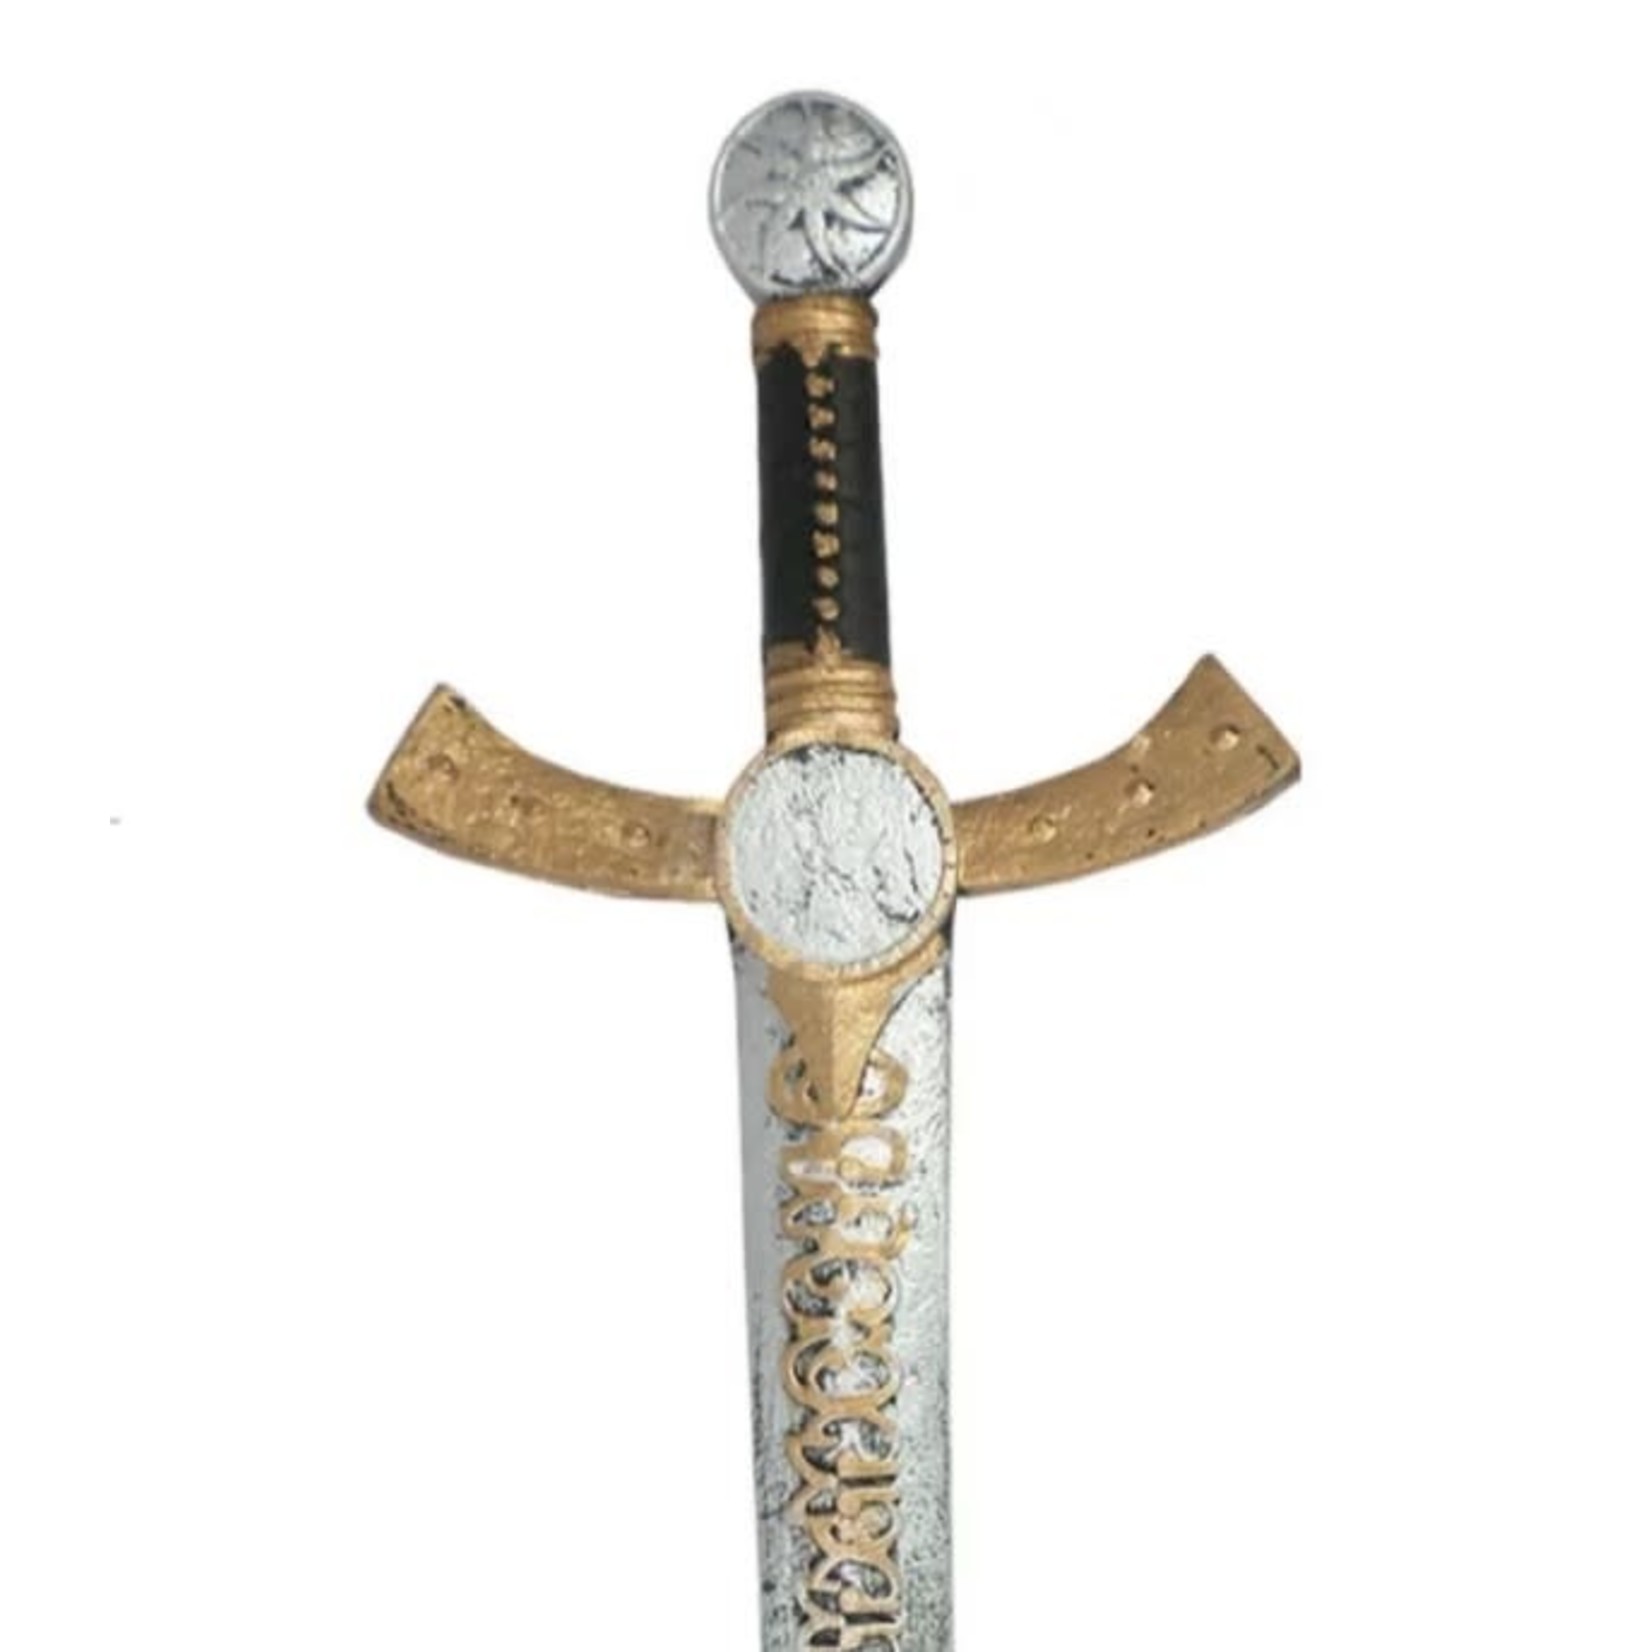 Great Pretenders GREAT PRETENDERS - Épée de chevalier en mousse (2 modèles)